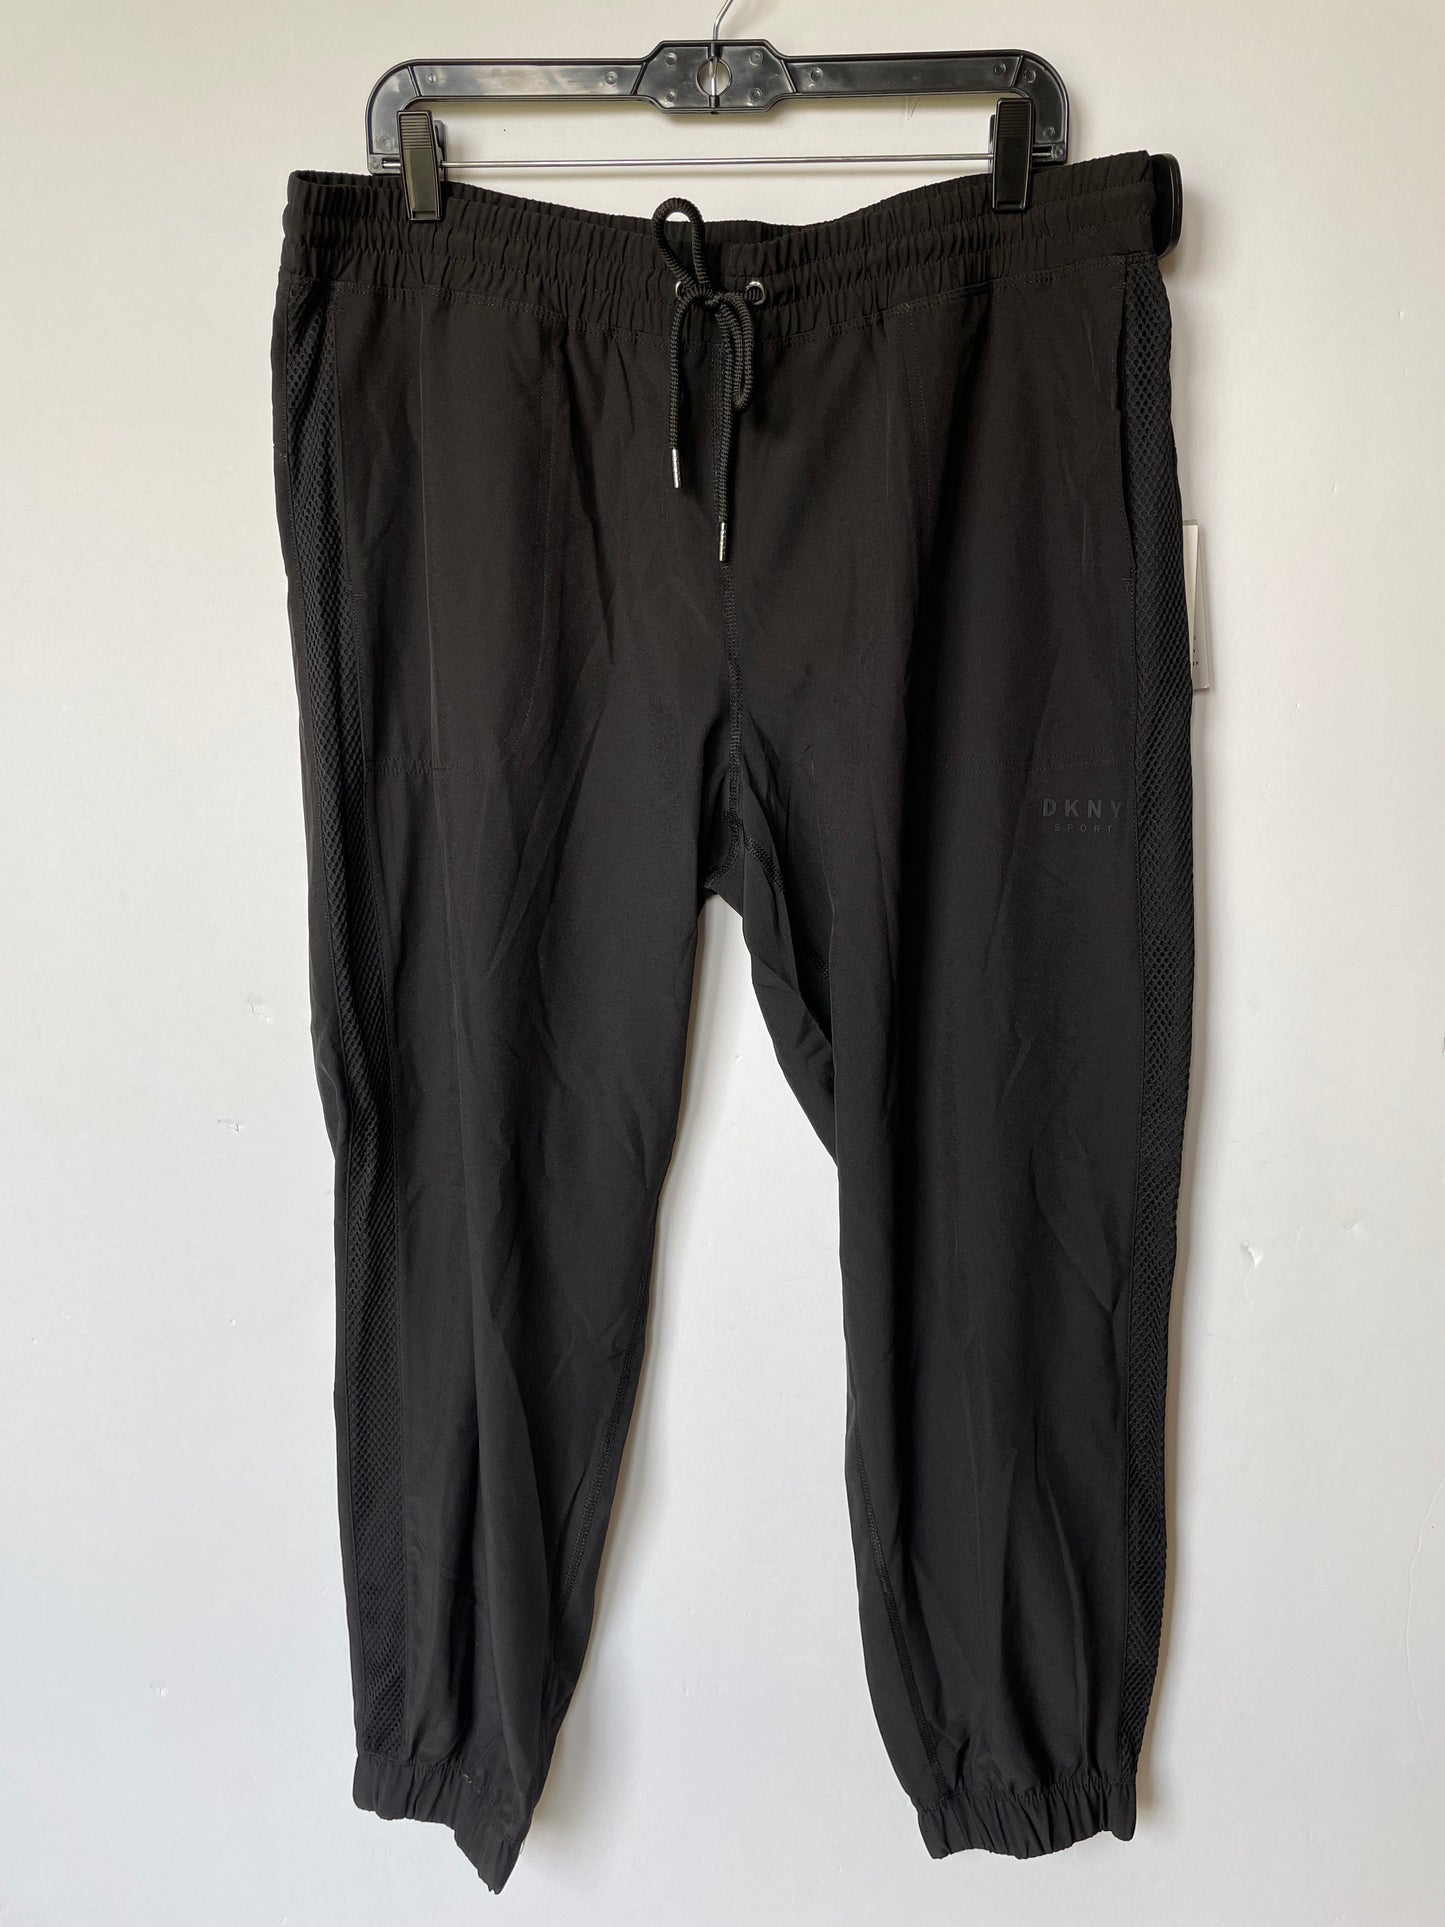 Black Athletic Pants Dkny, Size Xl